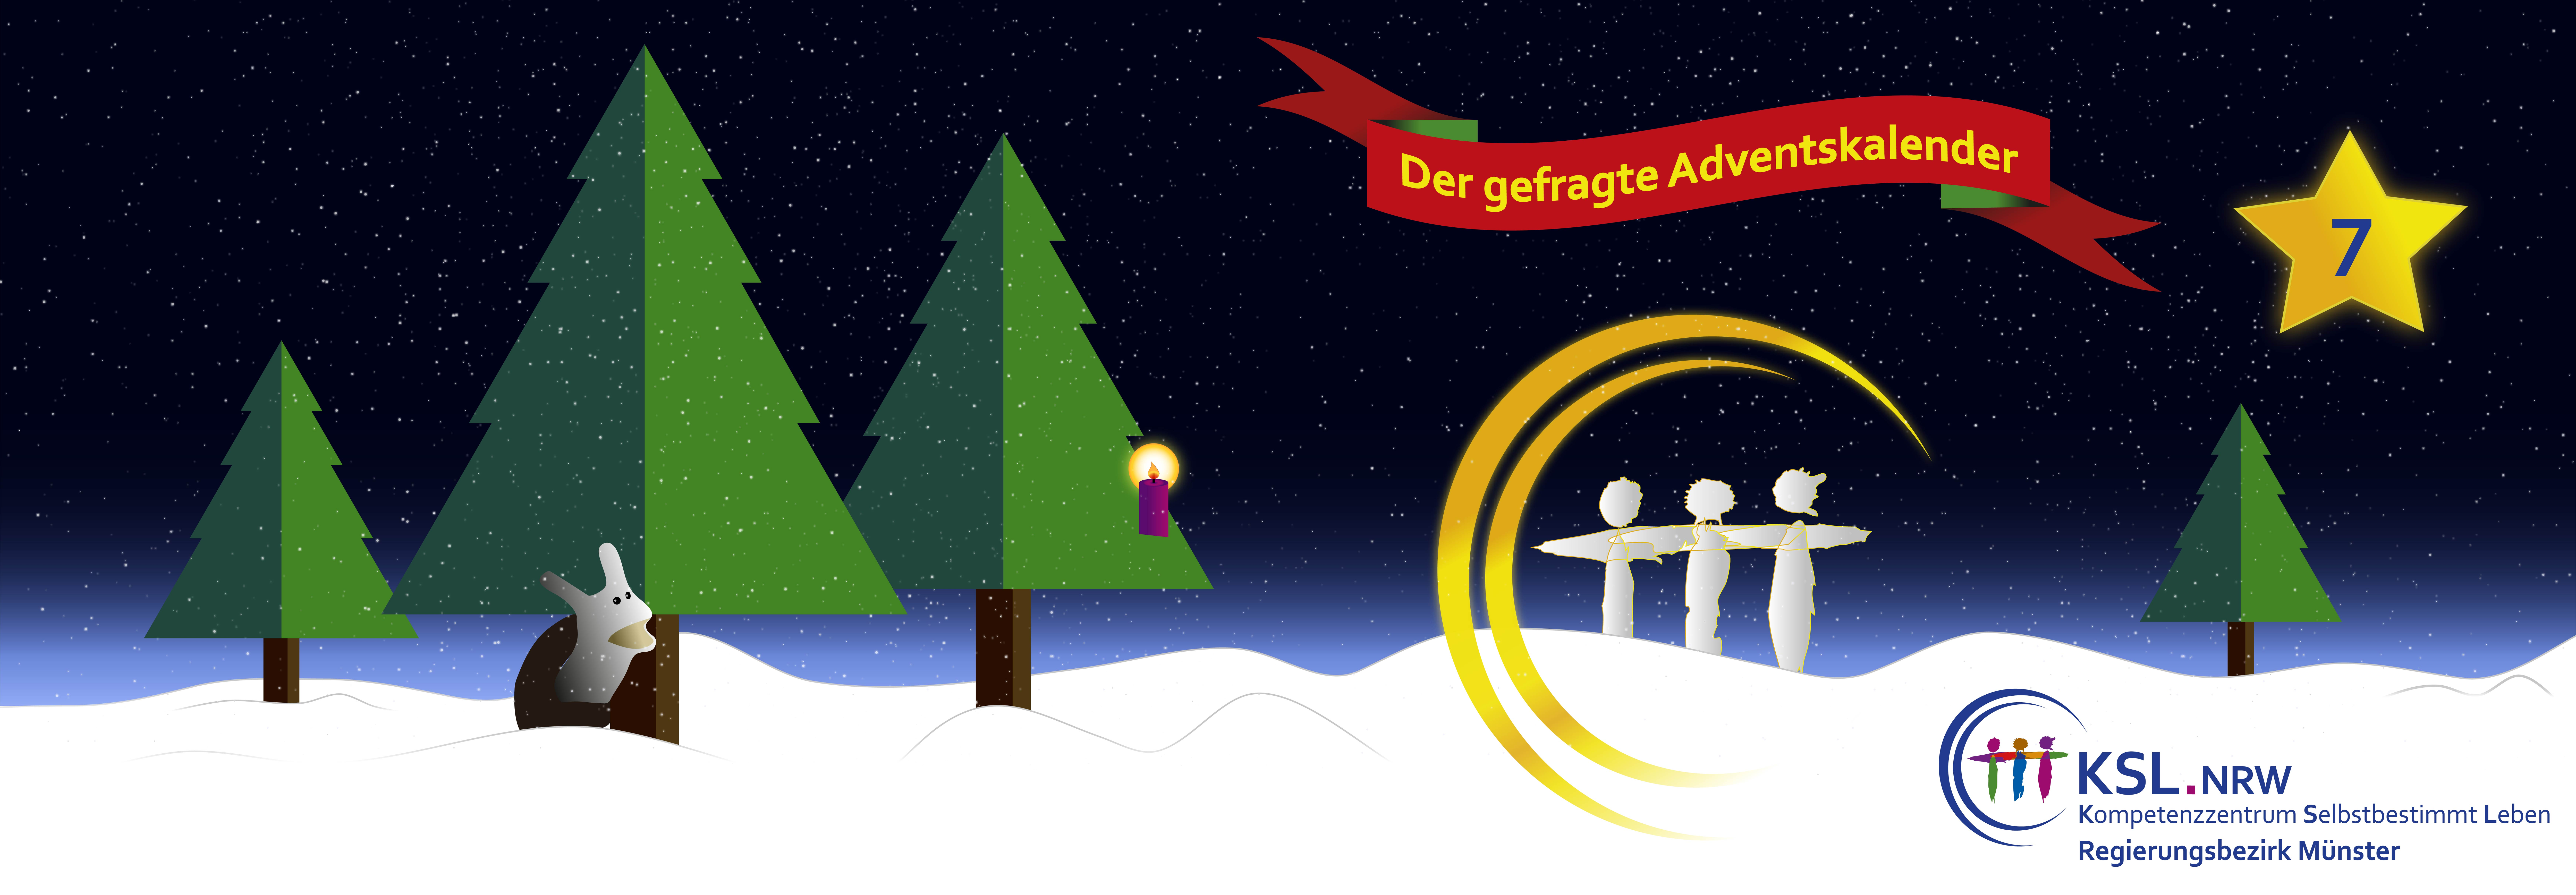 Der gefragte Adventskalaneder - KSL Münster - weihnachtlicher Hintergrund mit 3 Tannenbäumen und einer Schnecke im Schnee.